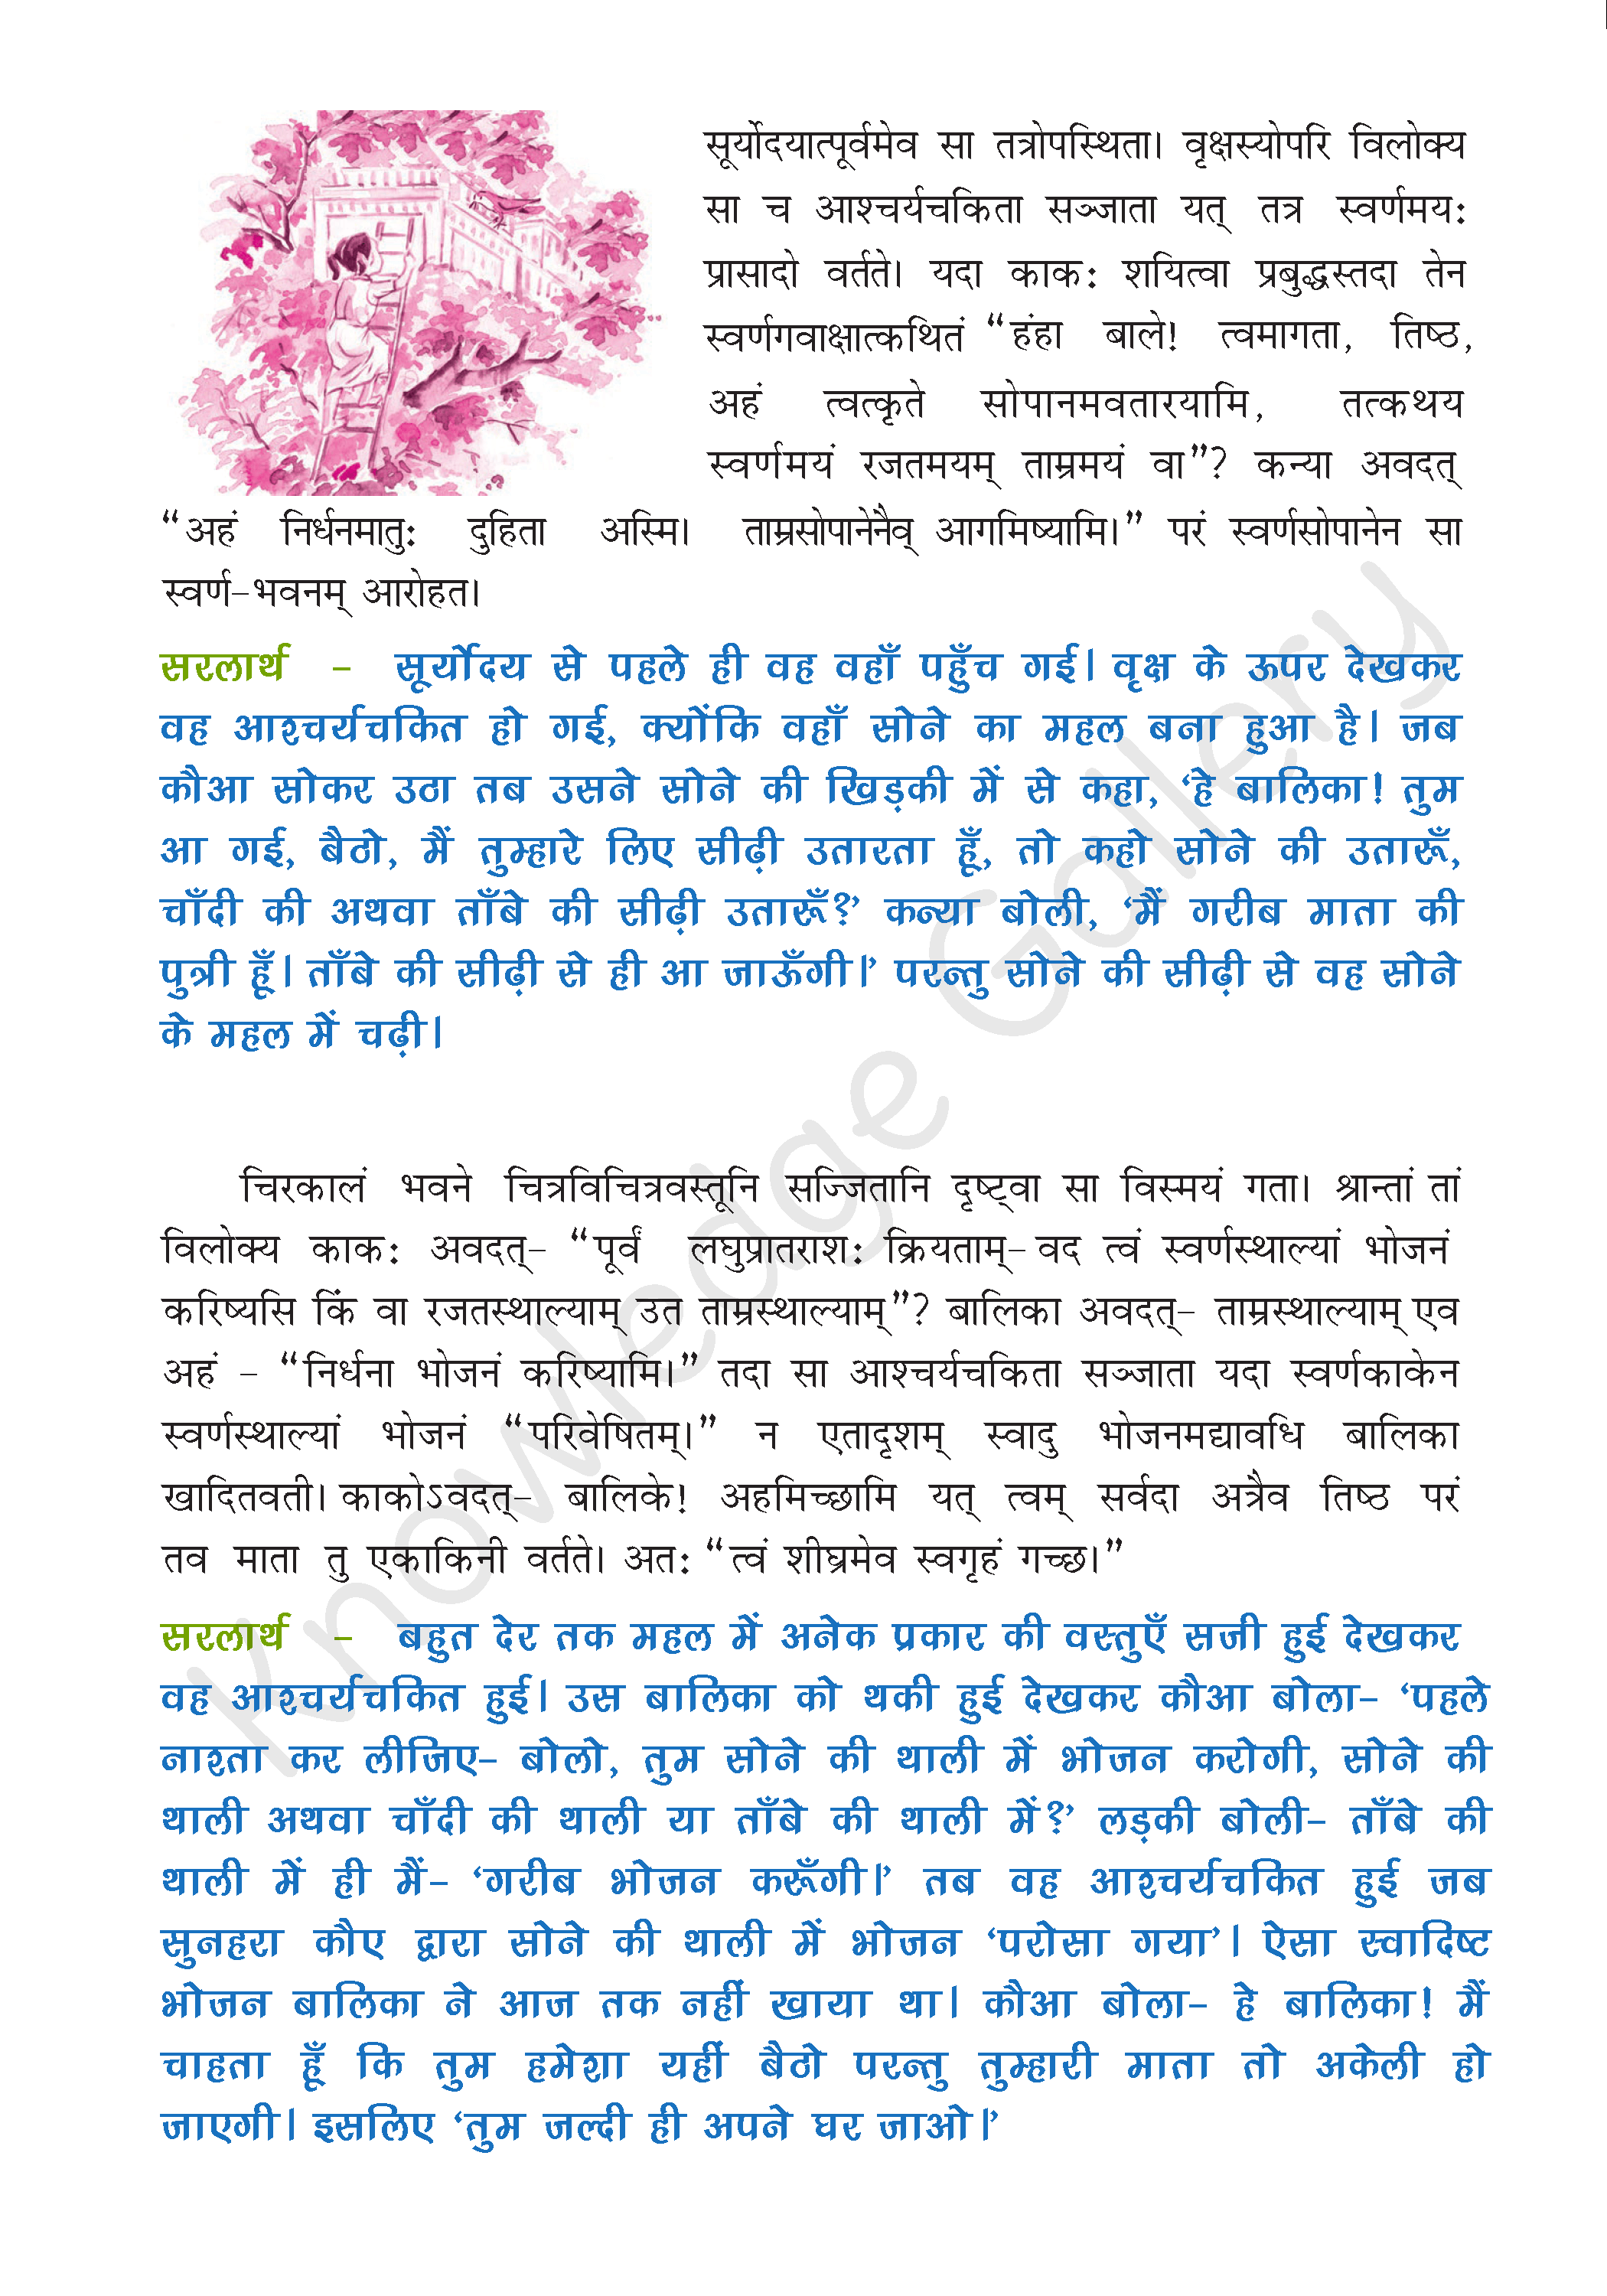 NCERT Solution For Class 9 Sanskrit Chapter 2 part 2